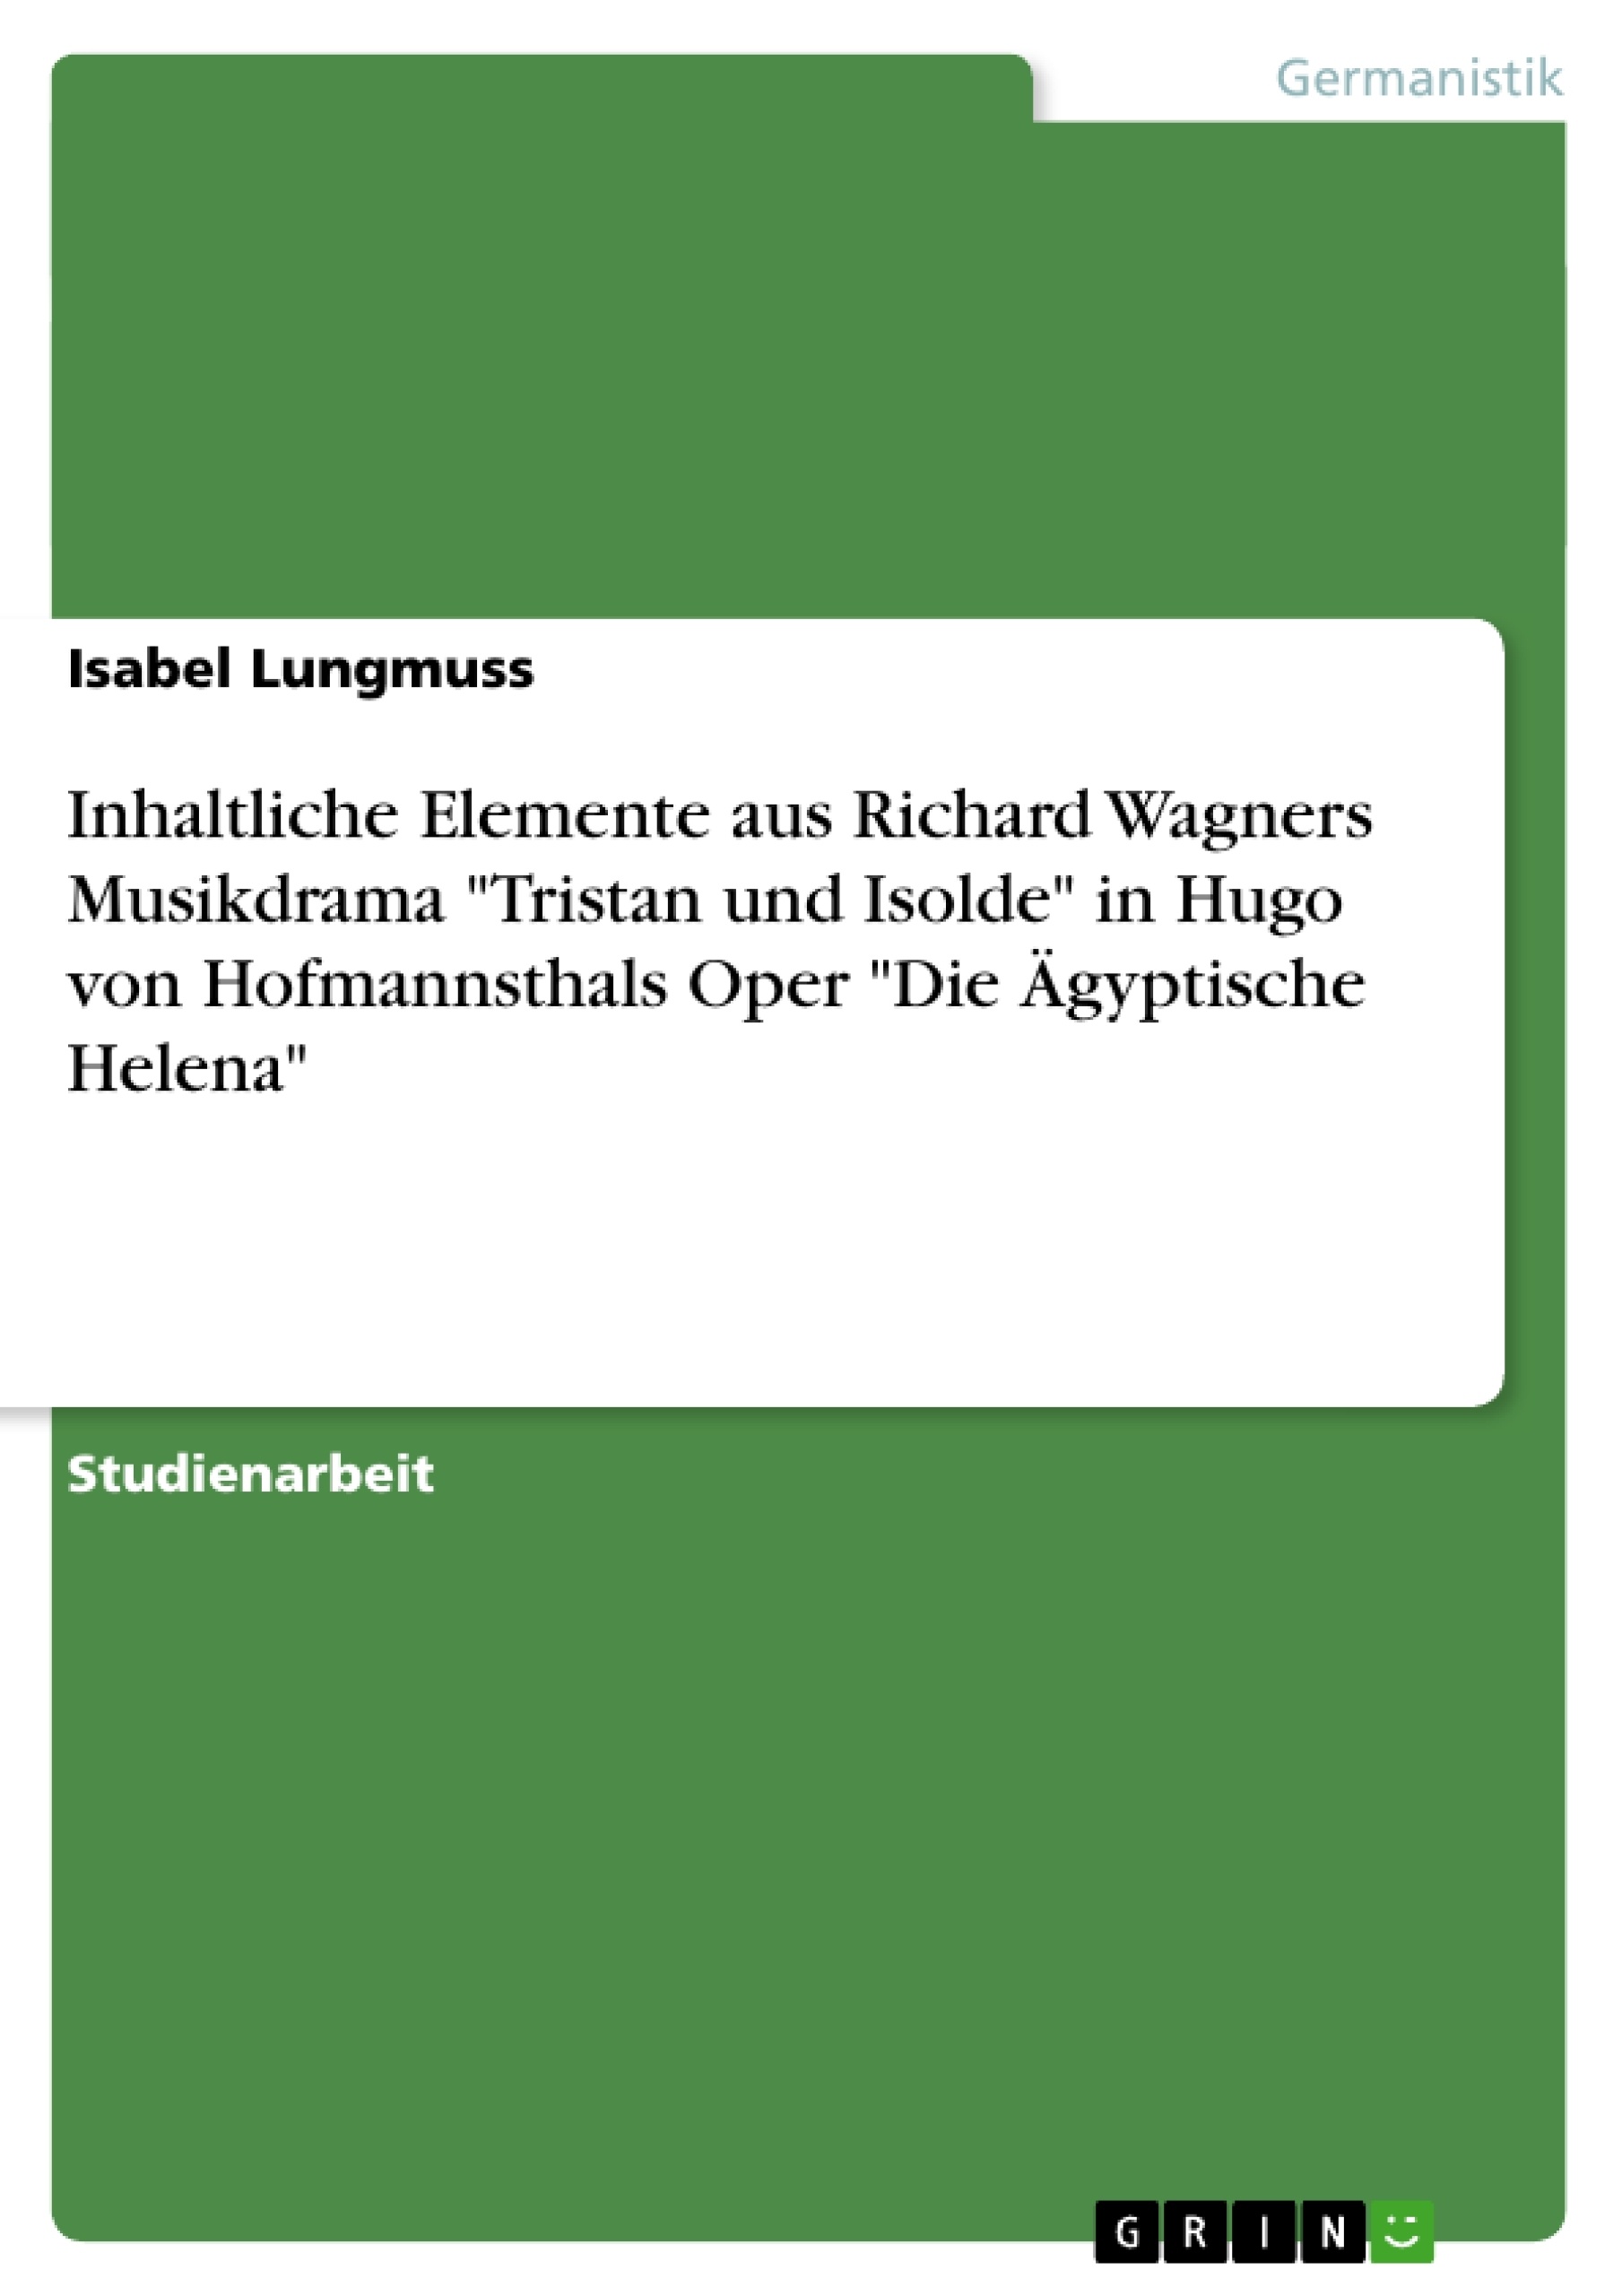 Título: Inhaltliche Elemente aus Richard Wagners Musikdrama "Tristan und Isolde" in Hugo von Hofmannsthals Oper "Die Ägyptische Helena"